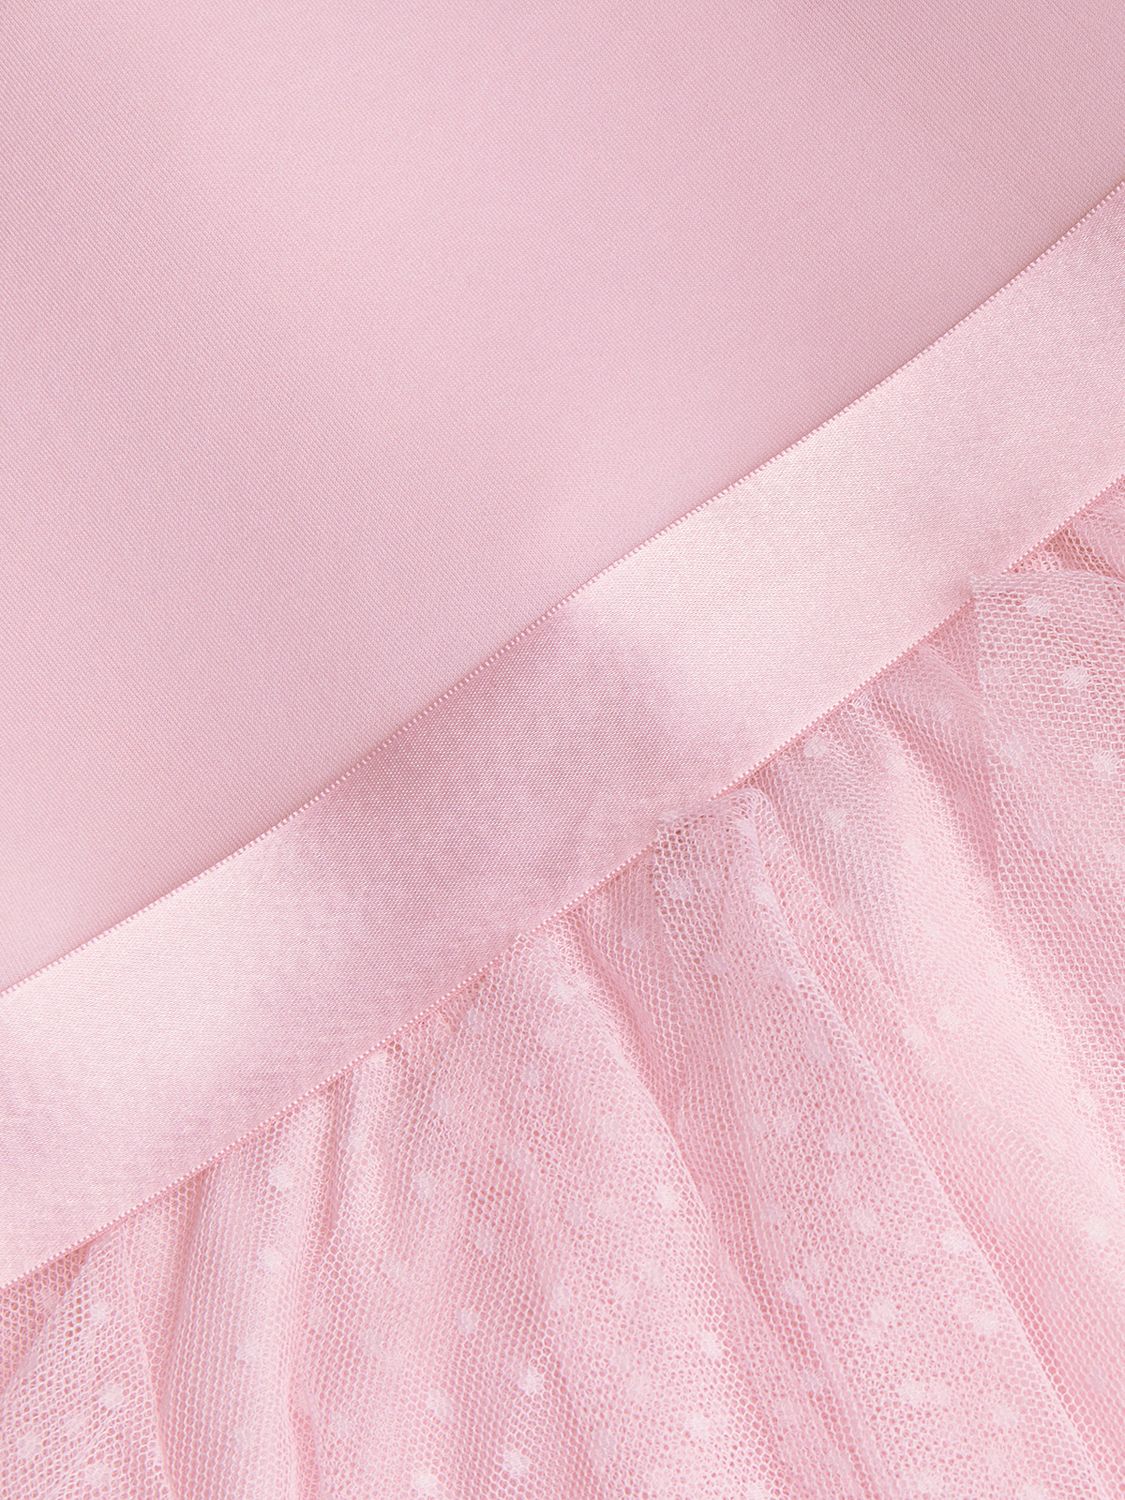 Monsoon Baby Milie Ruffle Pin Dot Occasion Dress, Pink at John Lewis ...